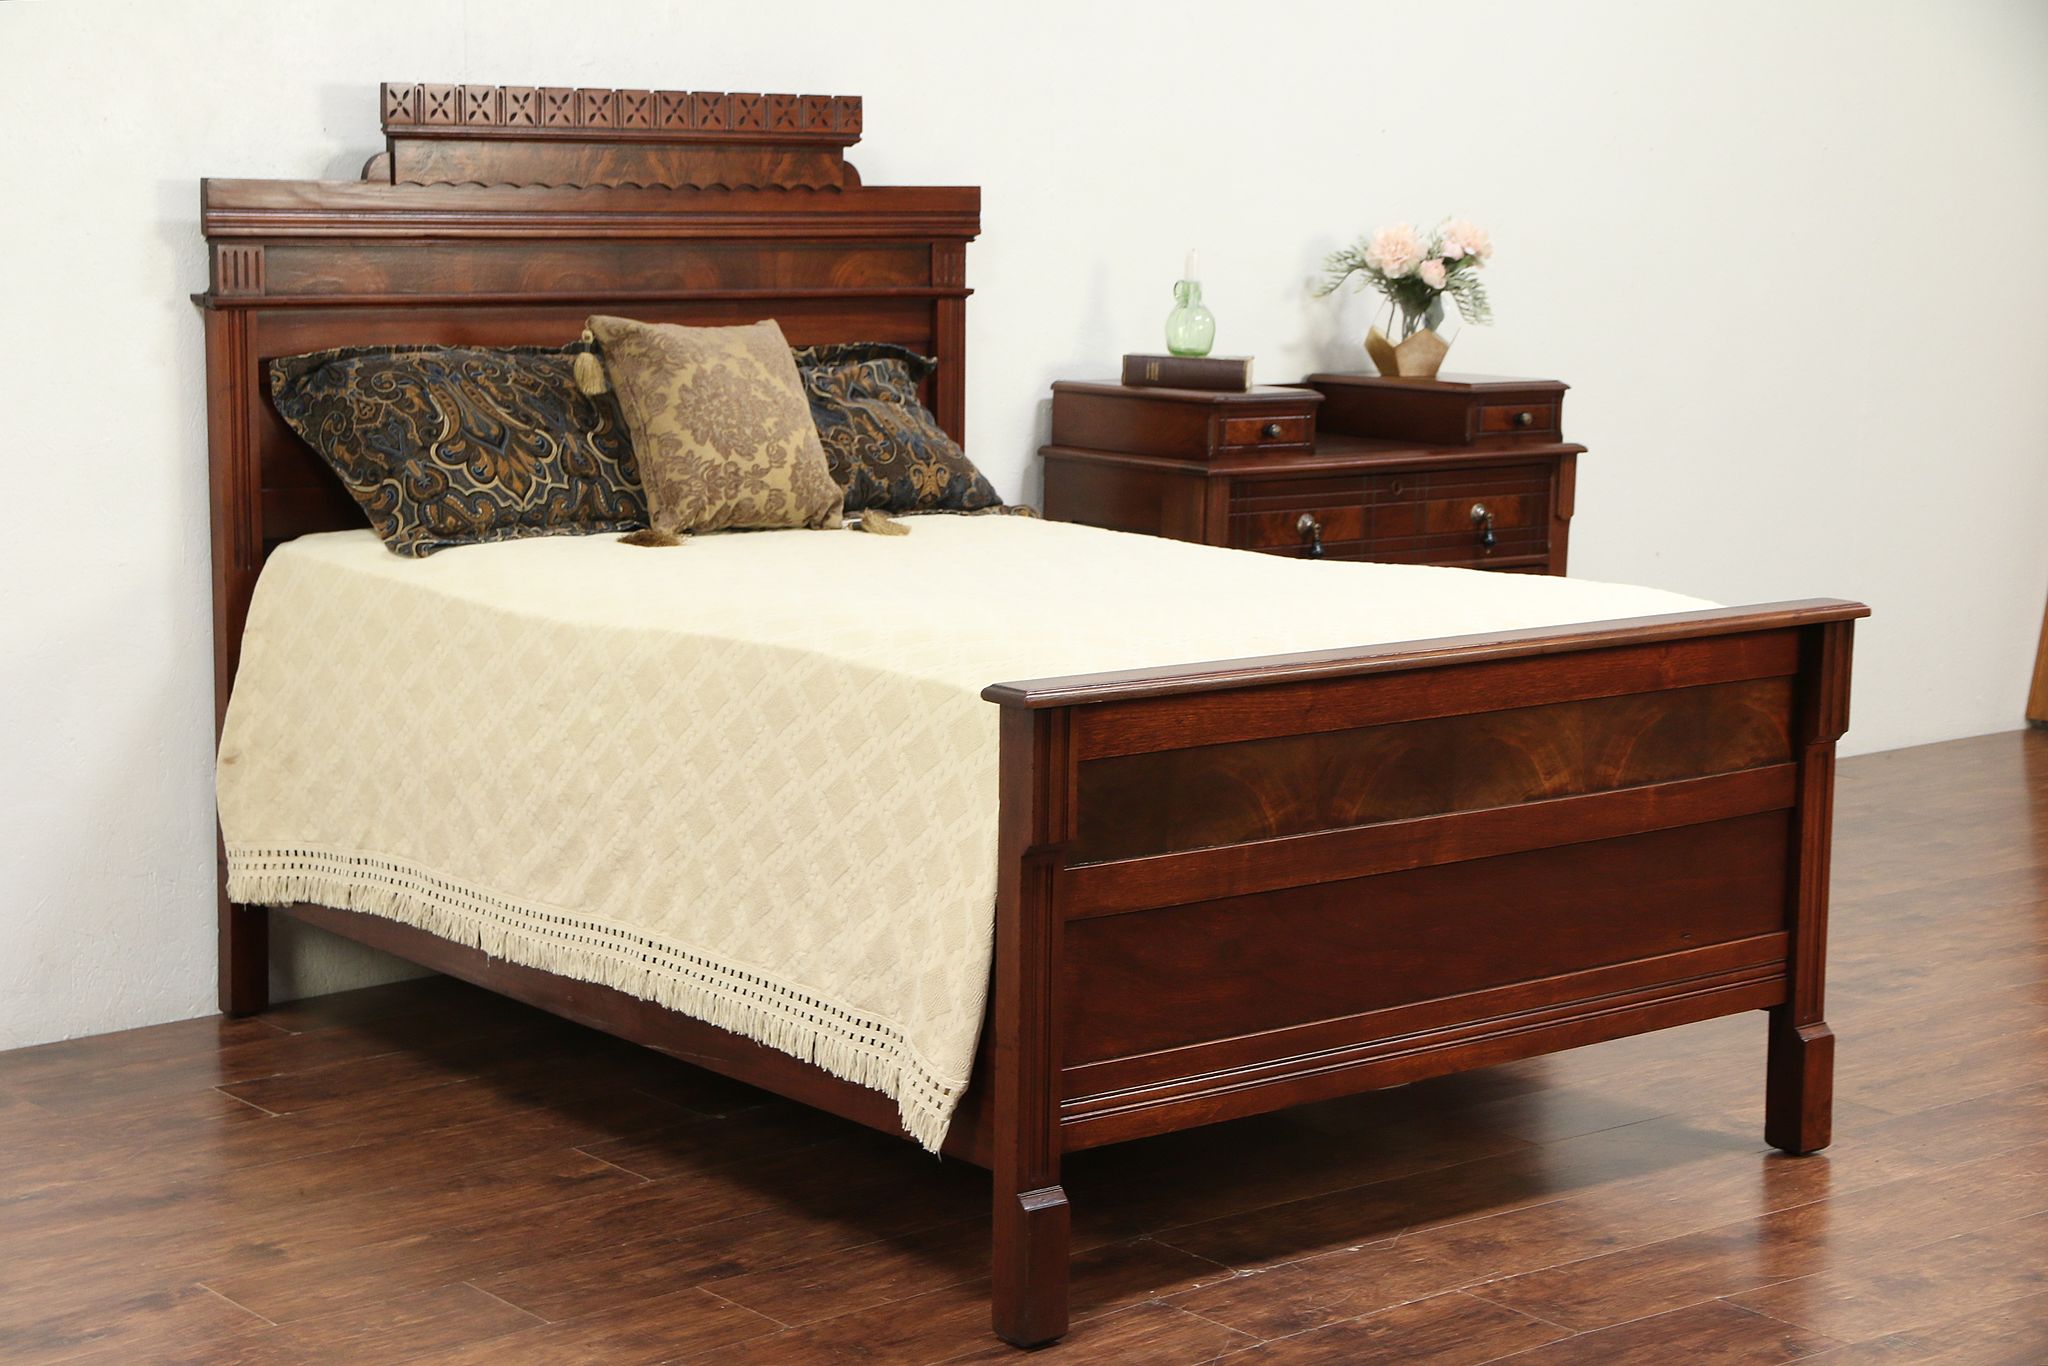 bedroom design with eastlake furniture